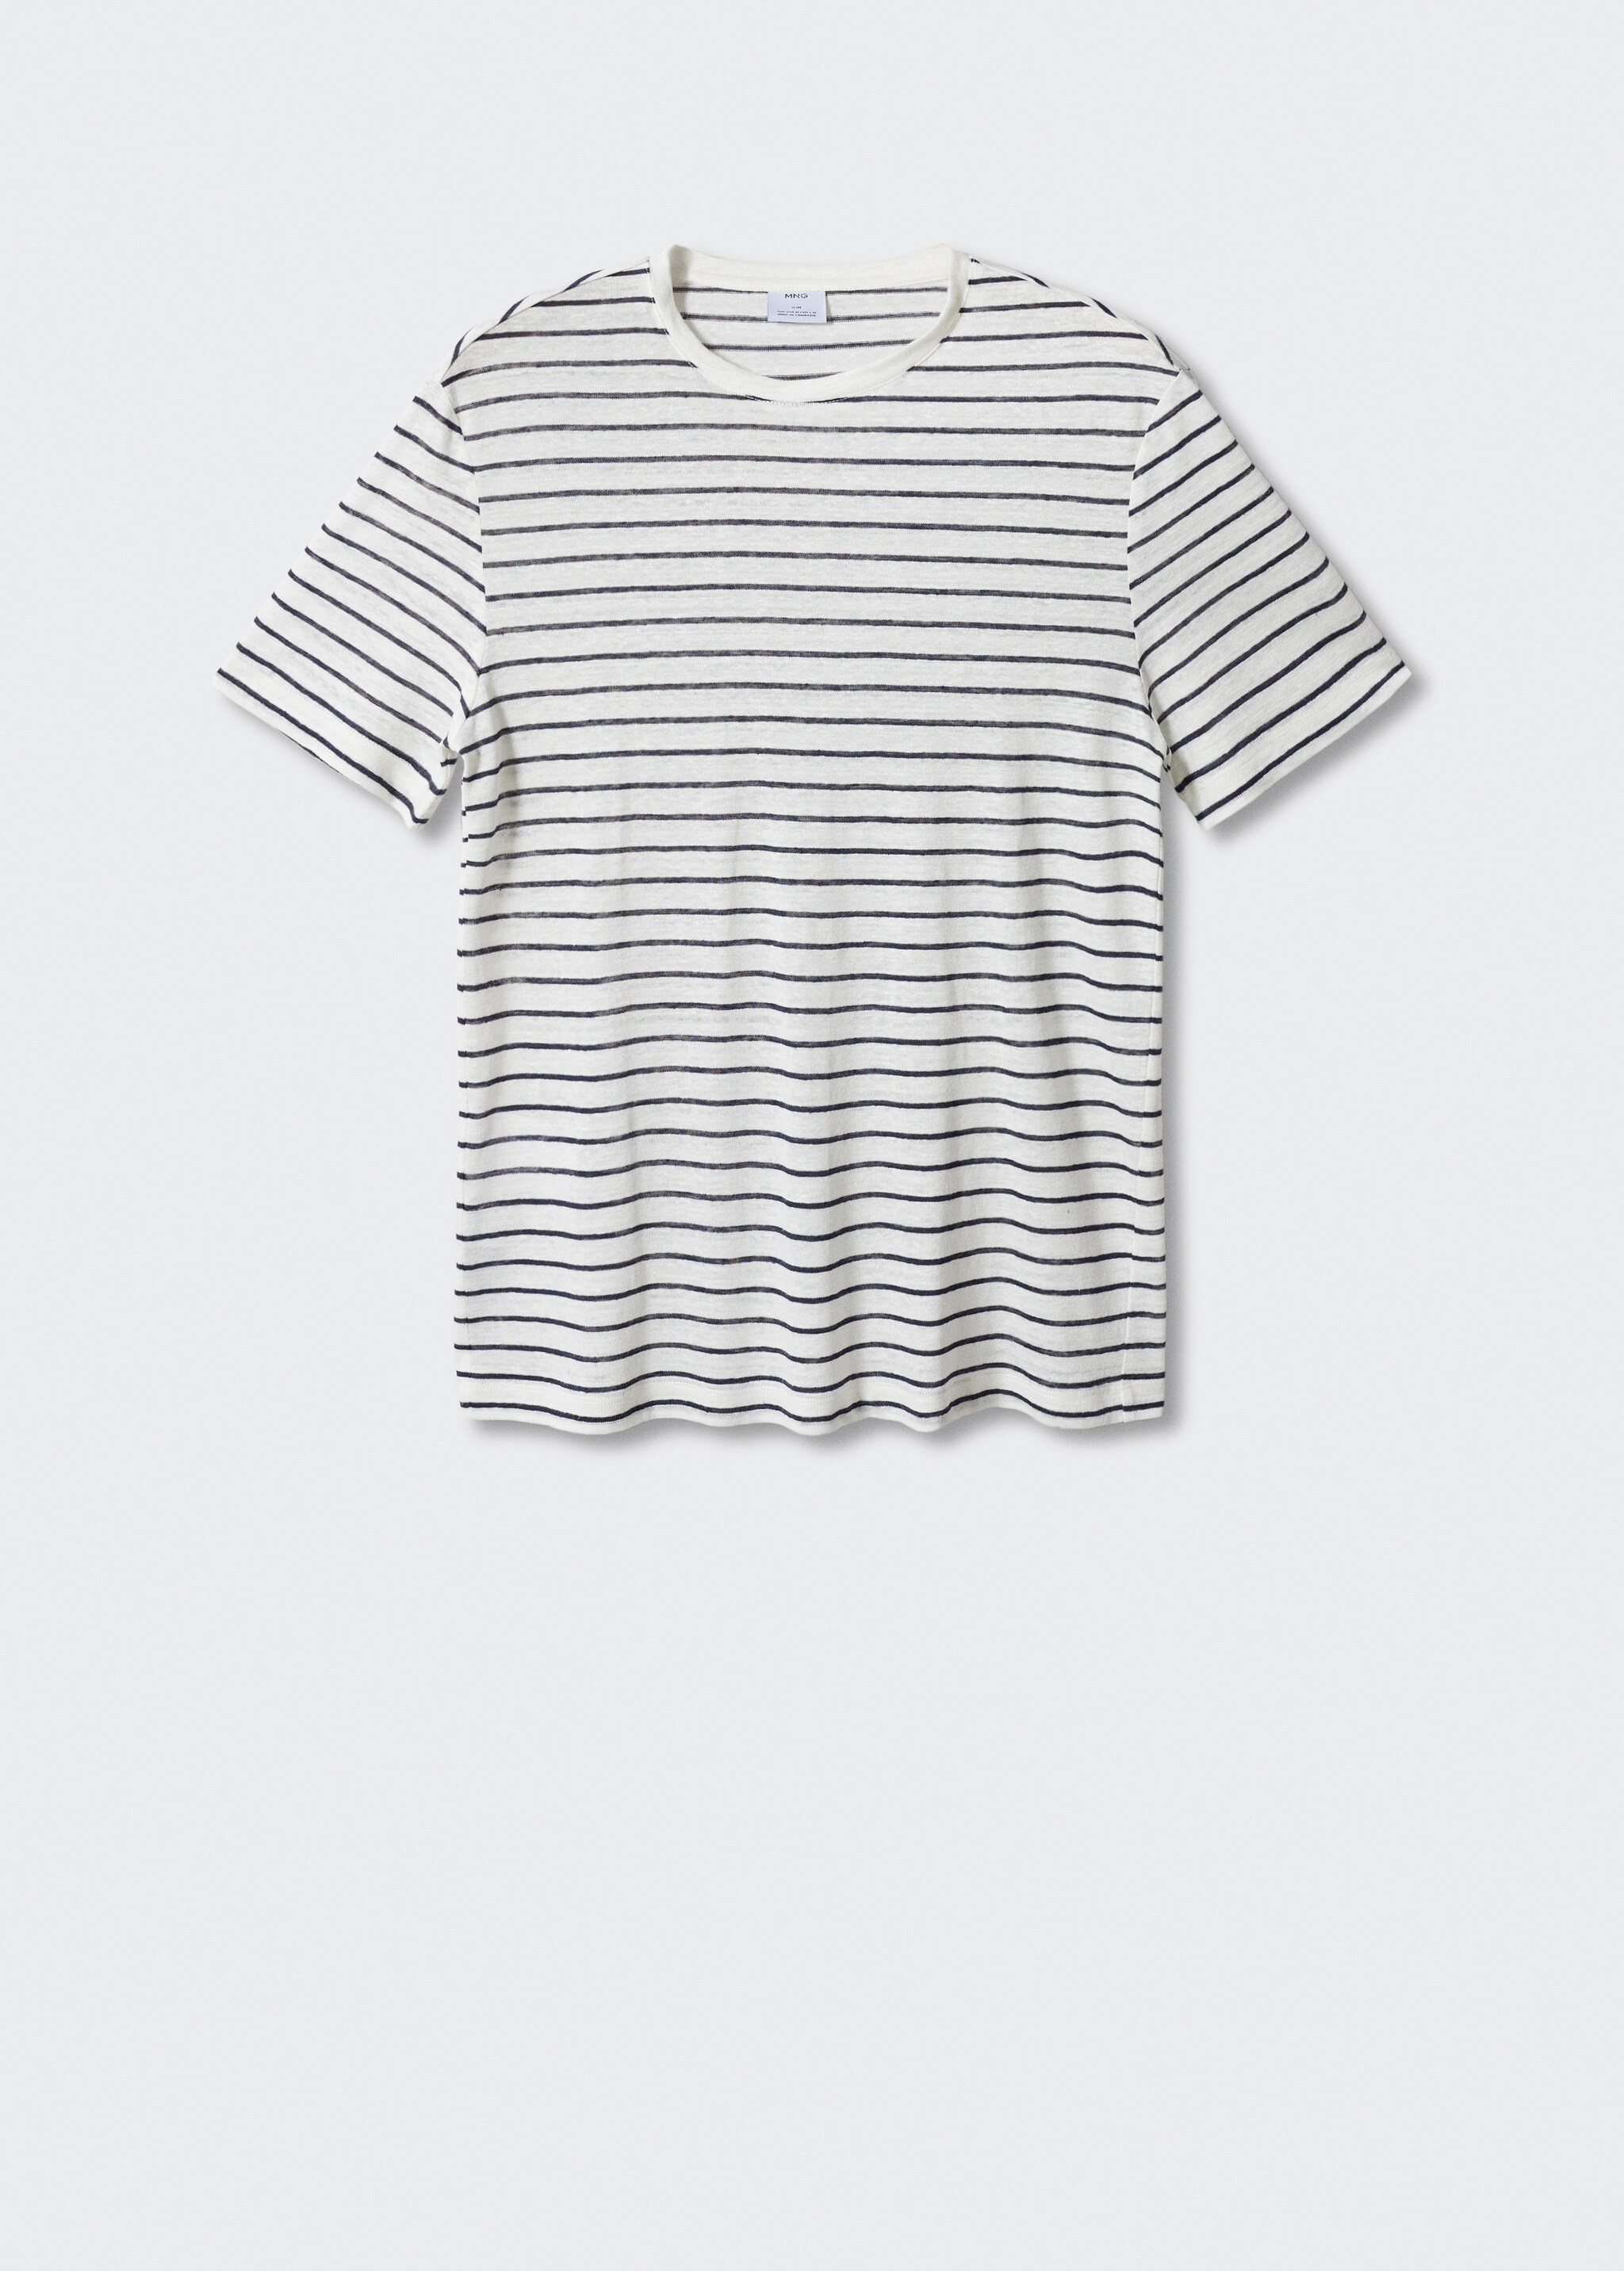 Camiseta 100% lino rayas - Artículo sin modelo